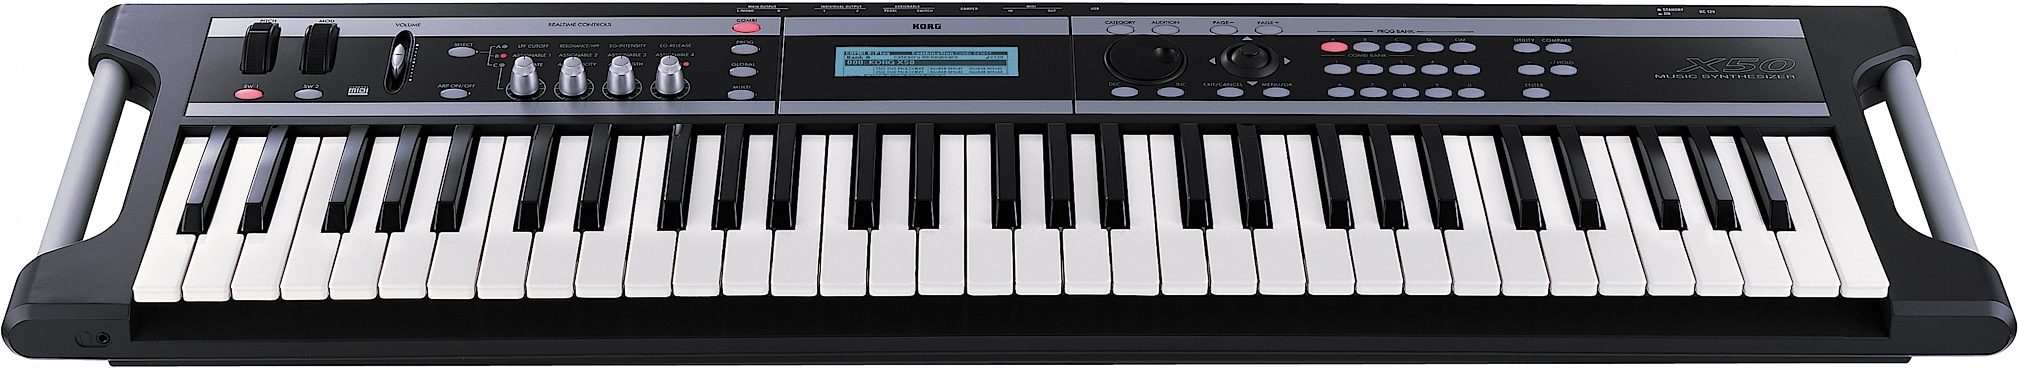 Korg X50 61-Key Synthesizer Keyboard | zZounds